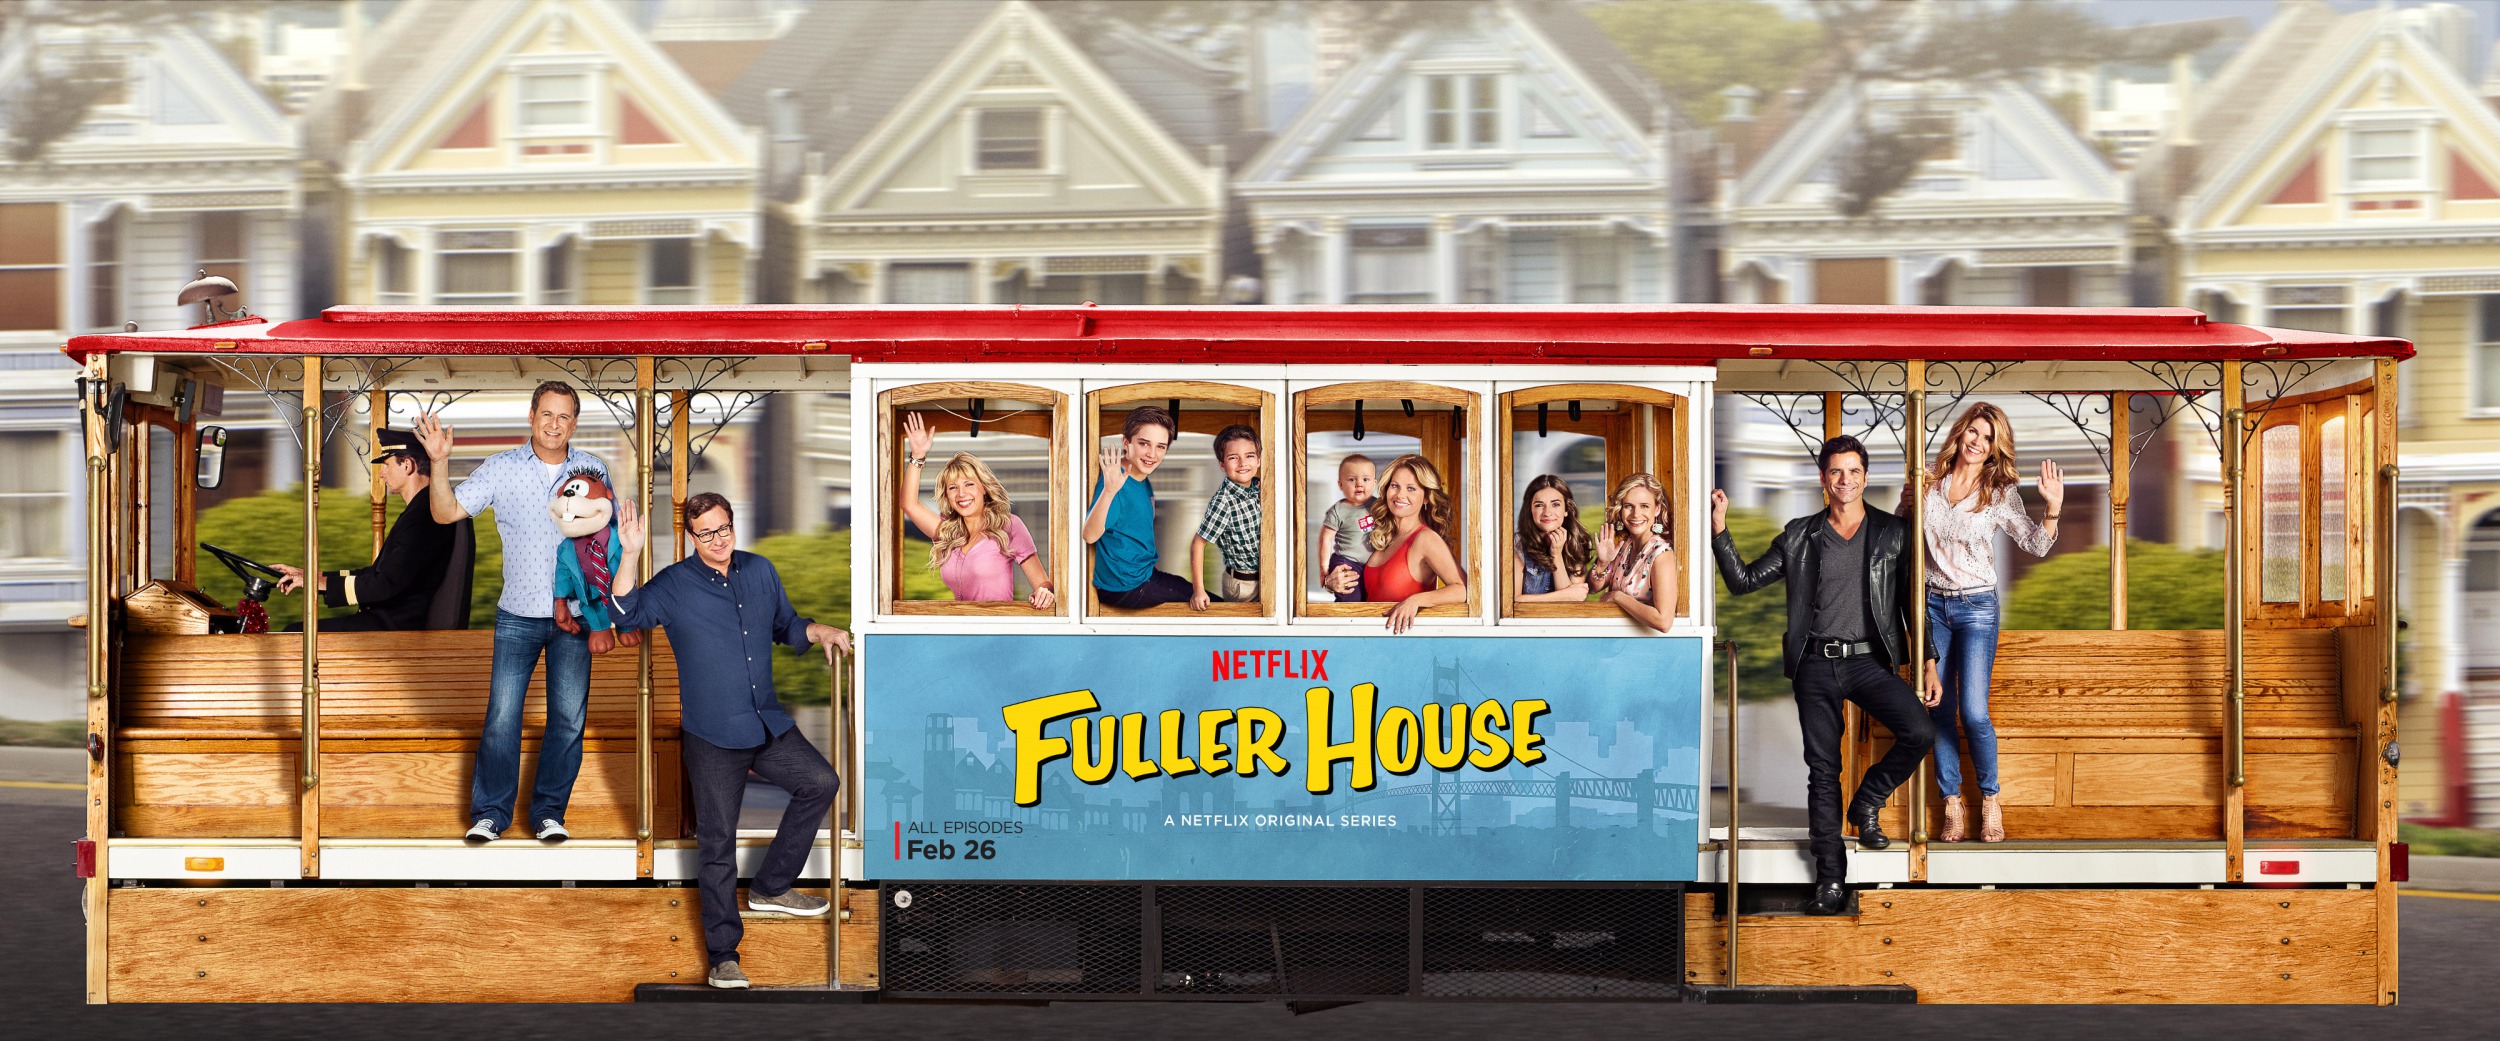 Mega Sized TV Poster Image for Fuller House (#11 of 16)